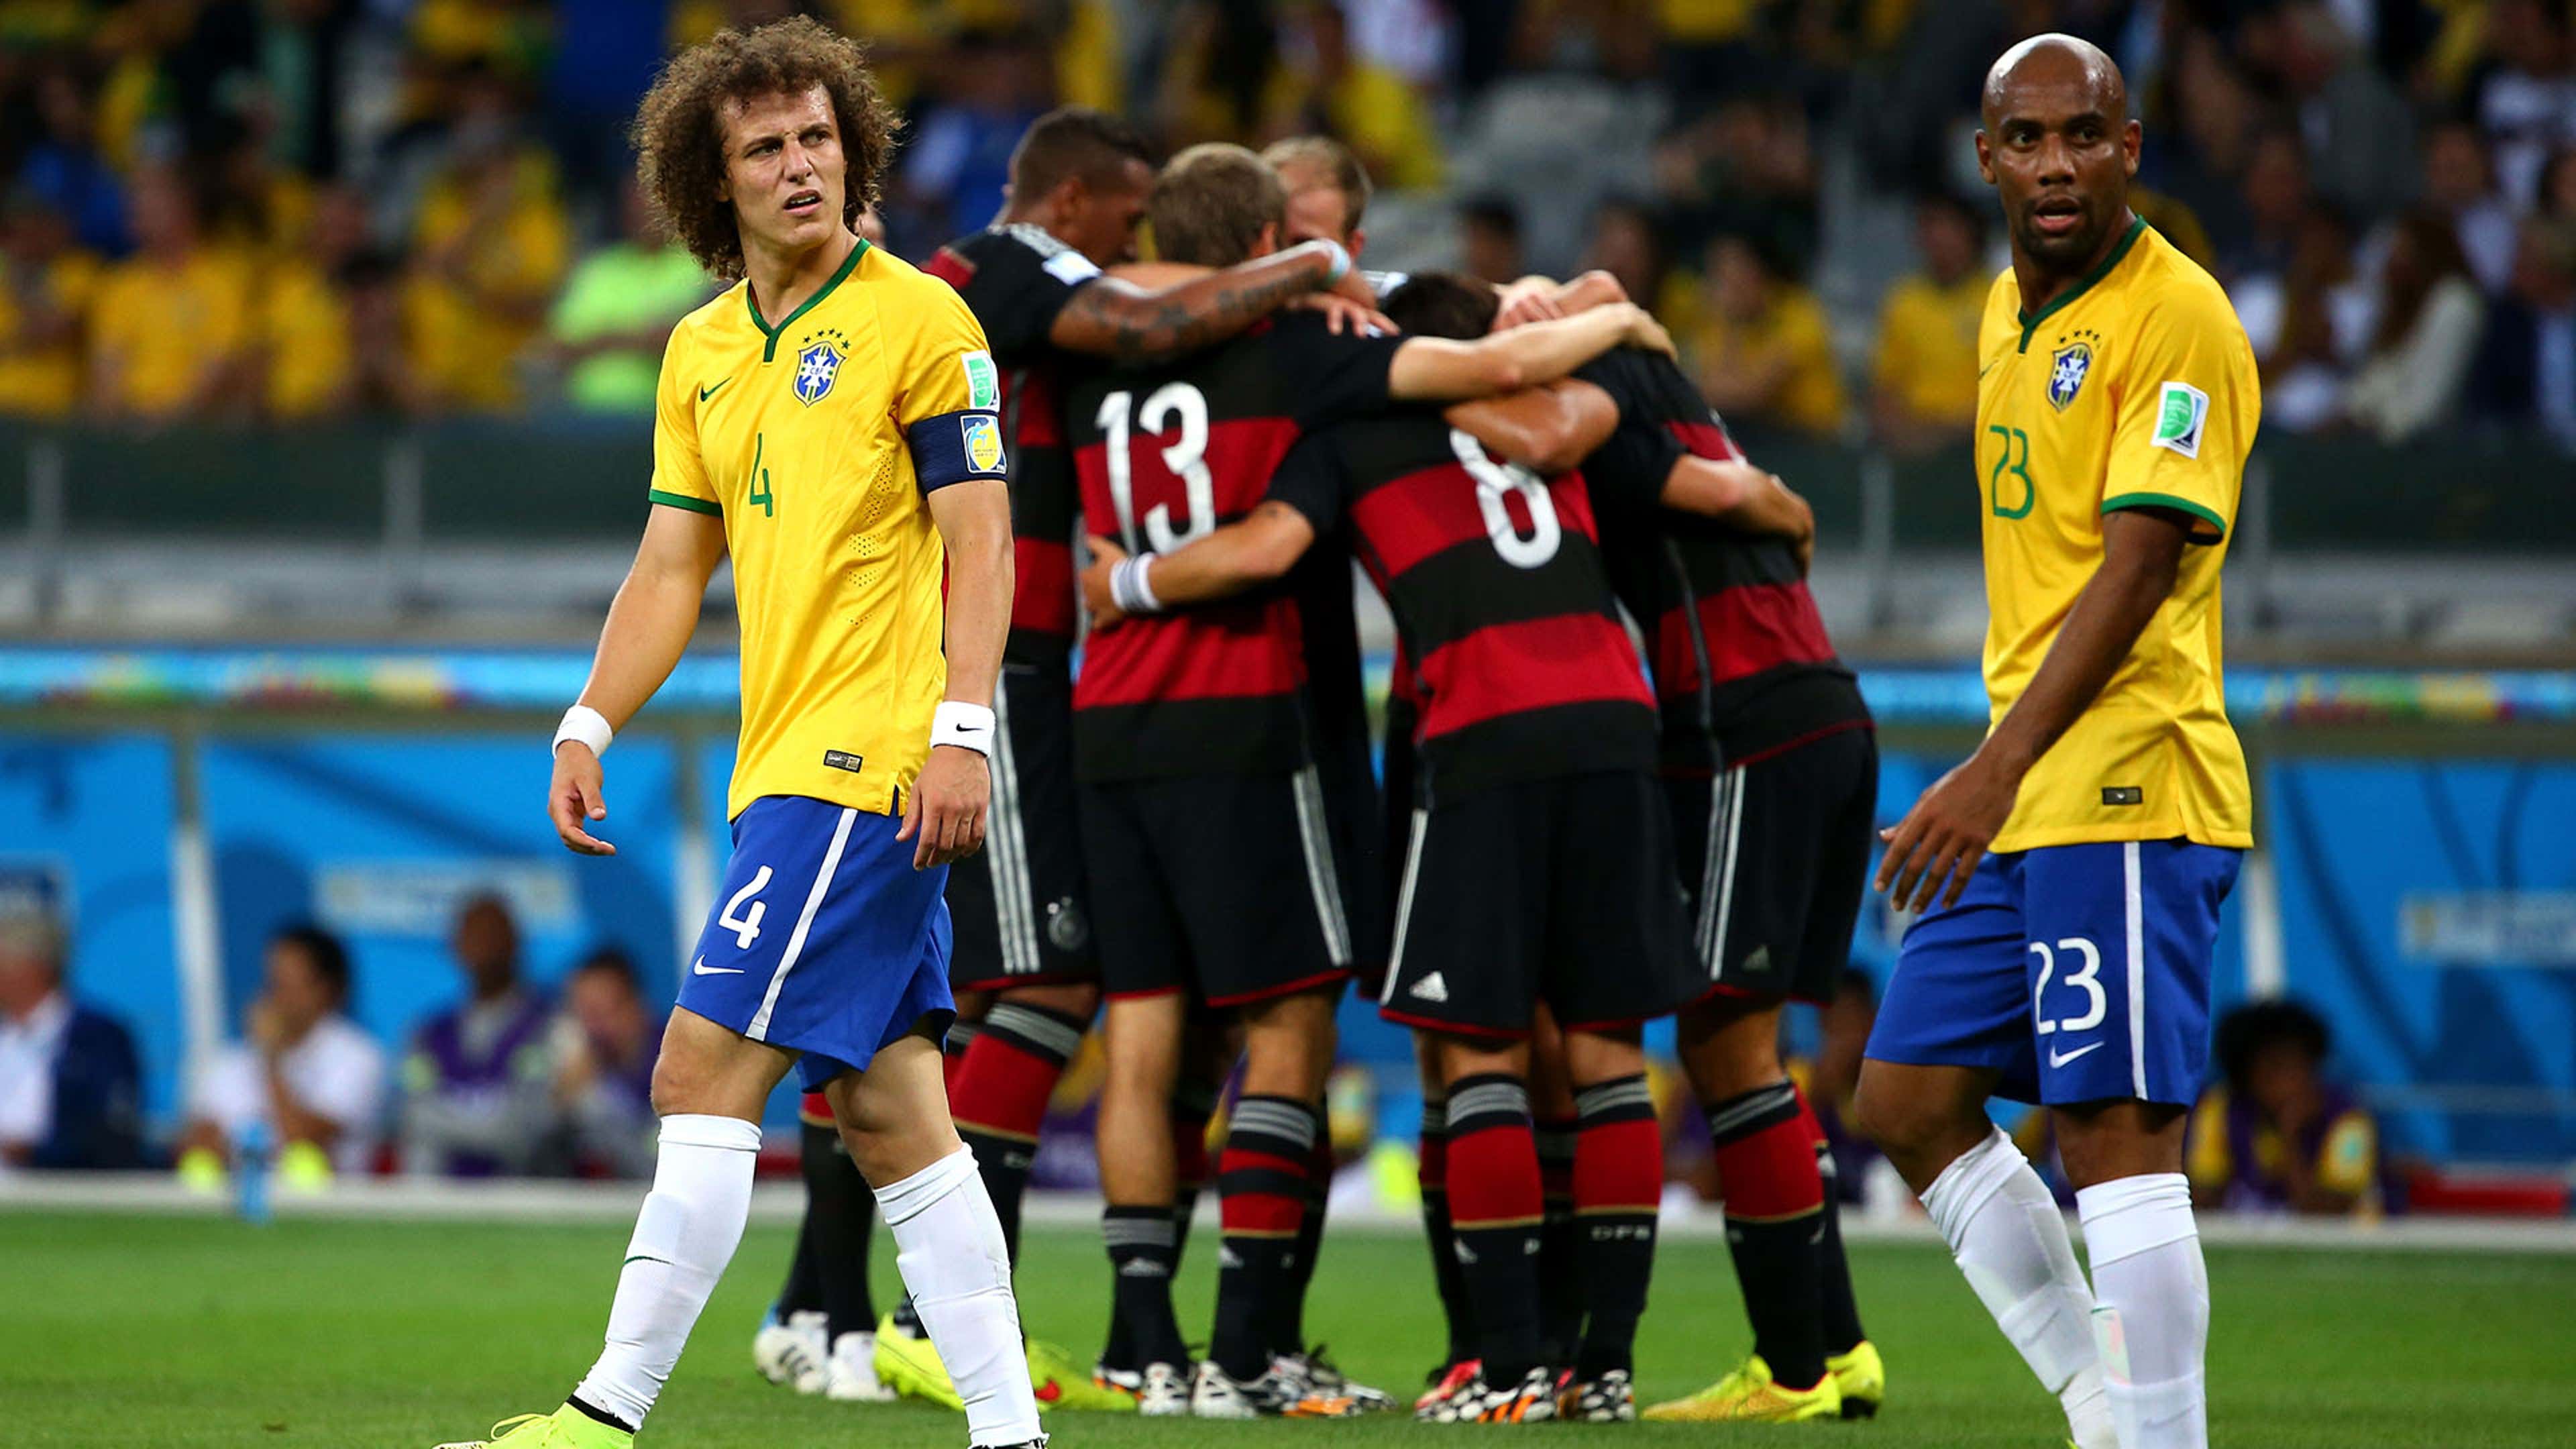 Brazil vs Germany 2014 World Cup